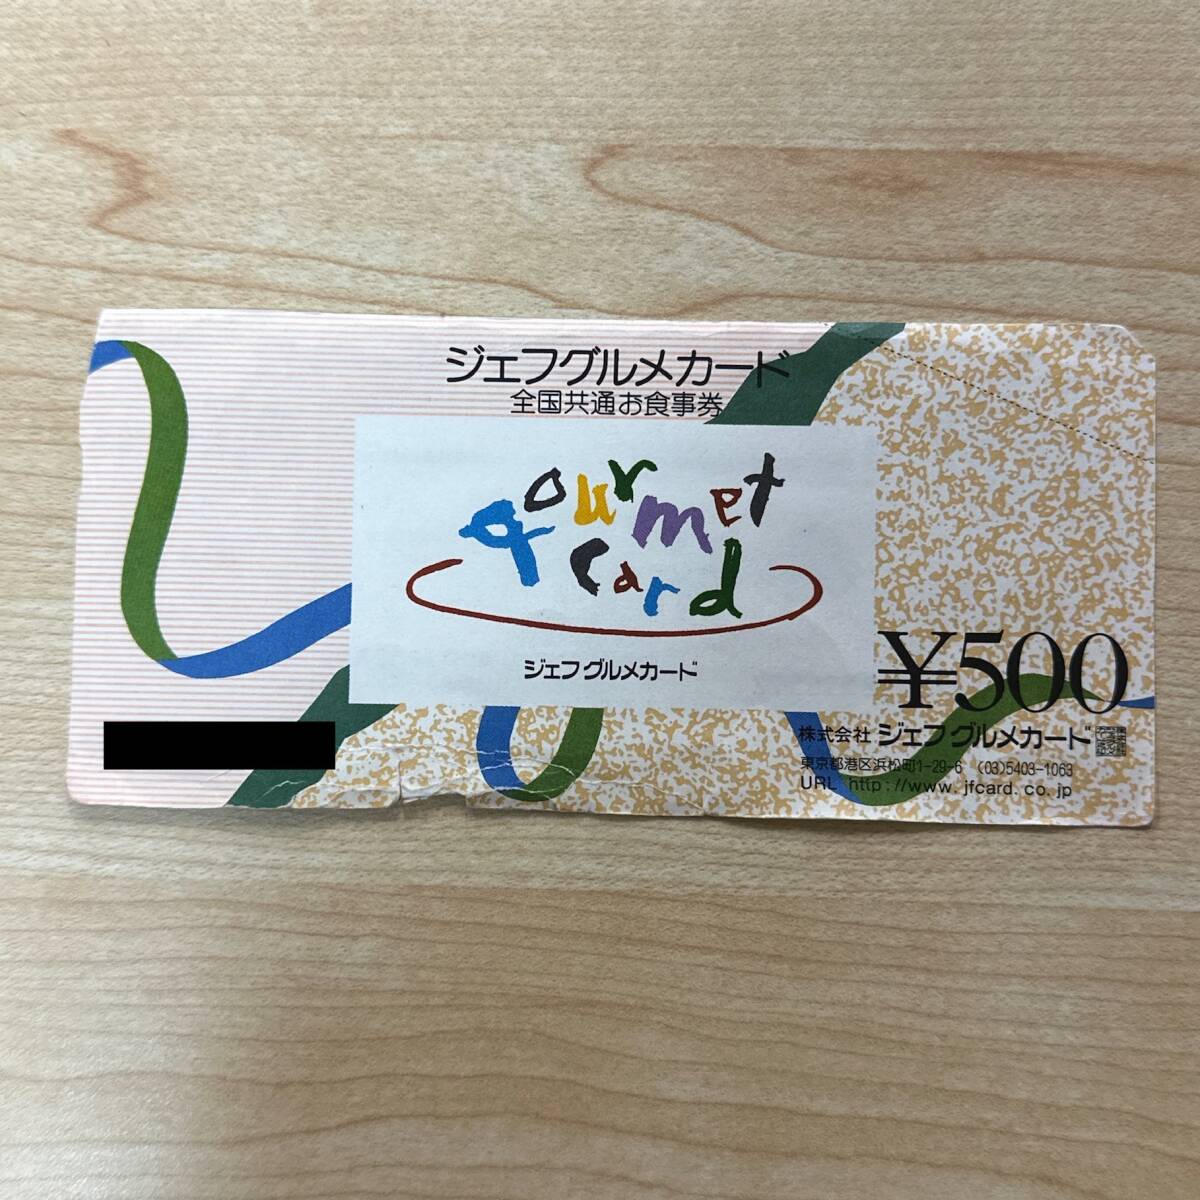 [TH0512] Джеф гурман карта вся страна общий . сертификат на обед 500 иен минут × 1 листов состояние есть дефект товар талон подарок карта золотой сертификат 